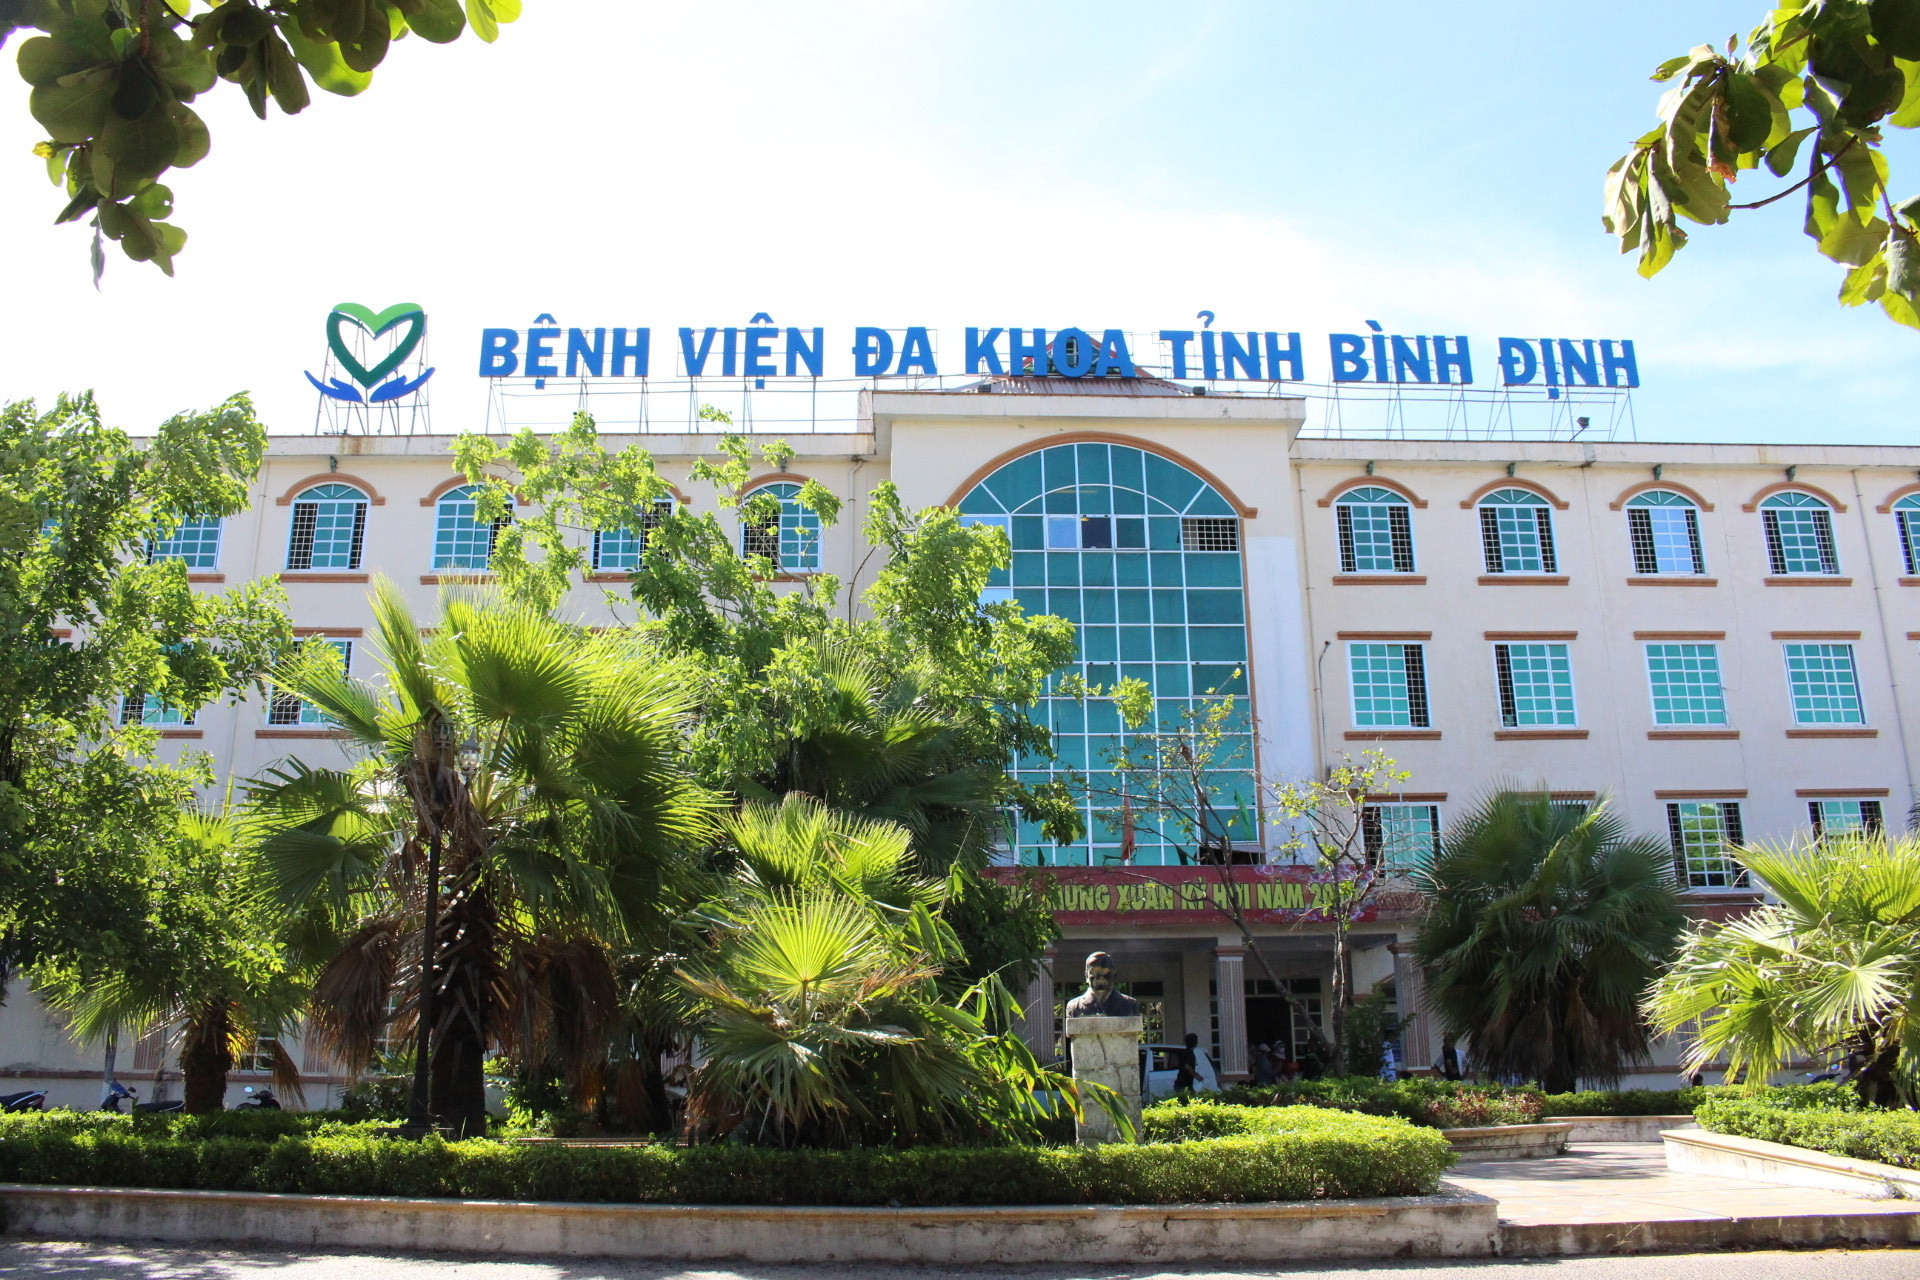 Bệnh viện gặp vướng mắc trong đấu thầu, Sở Y tế tỉnh Bình Định kiến nghị “nóng” với Bộ Y tế